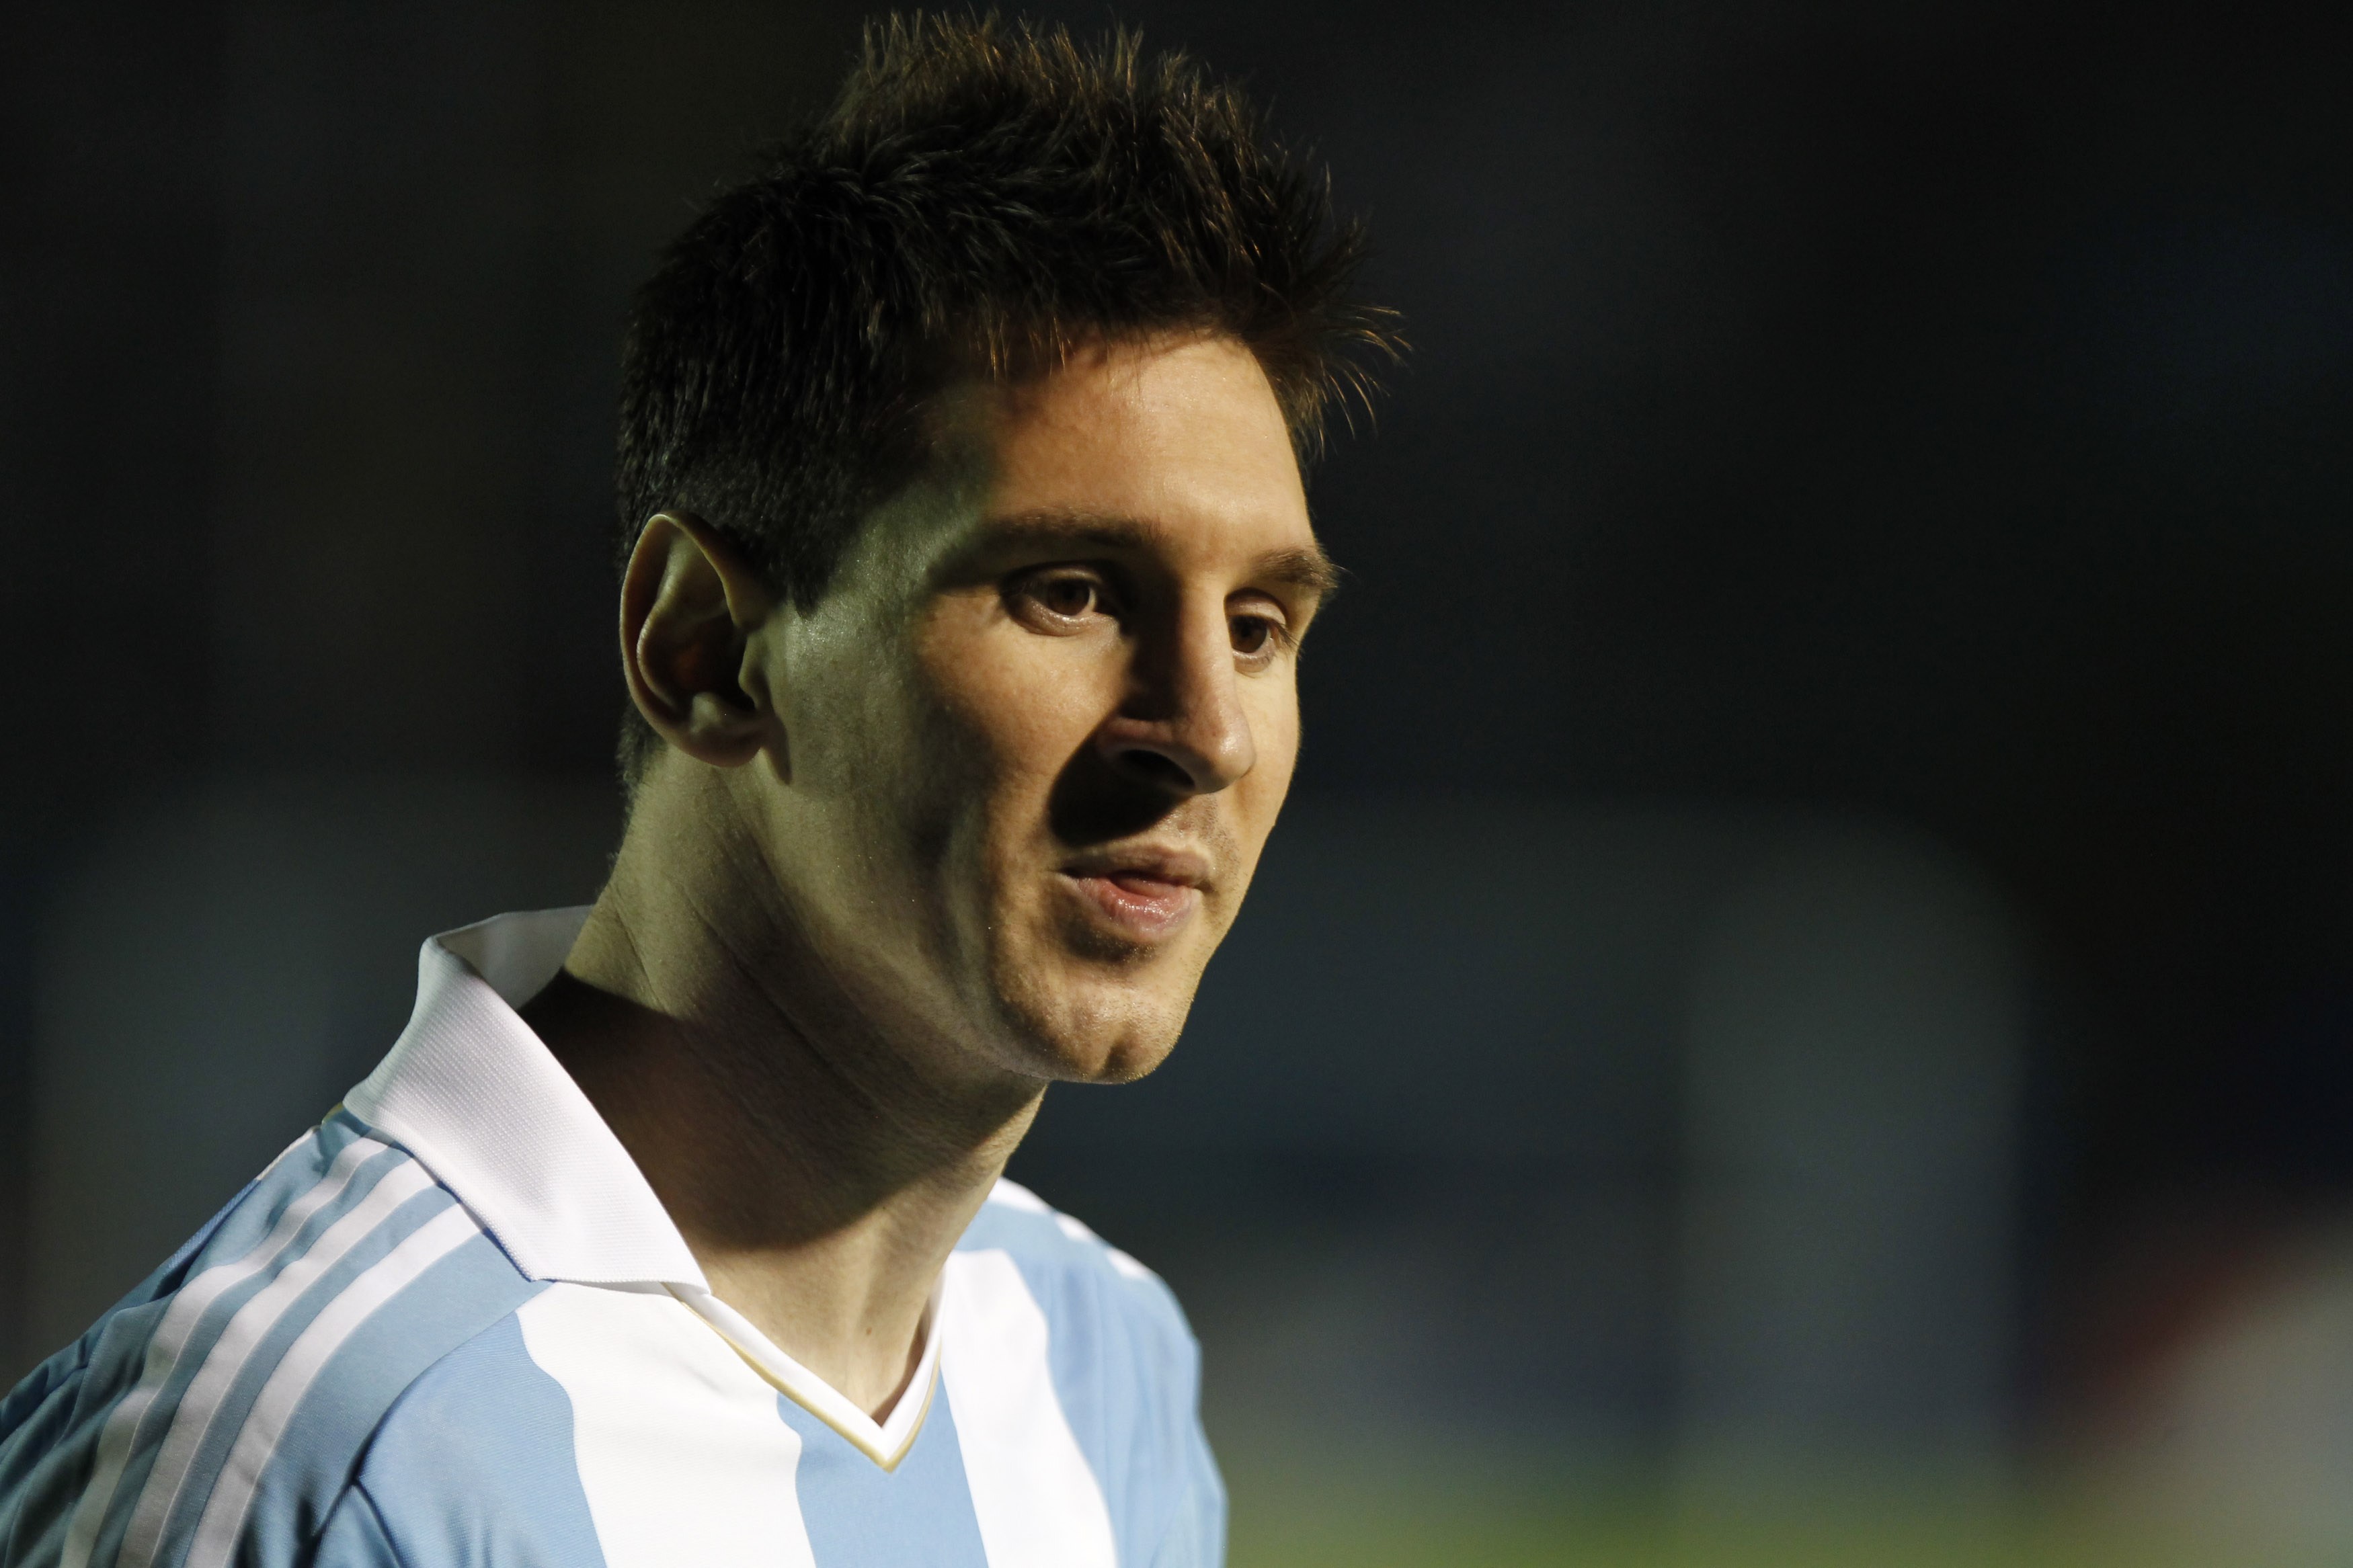 Lionel Messi se spojil s Louis Vuitton. Propaguje kufry a cestování -  CzechCrunch